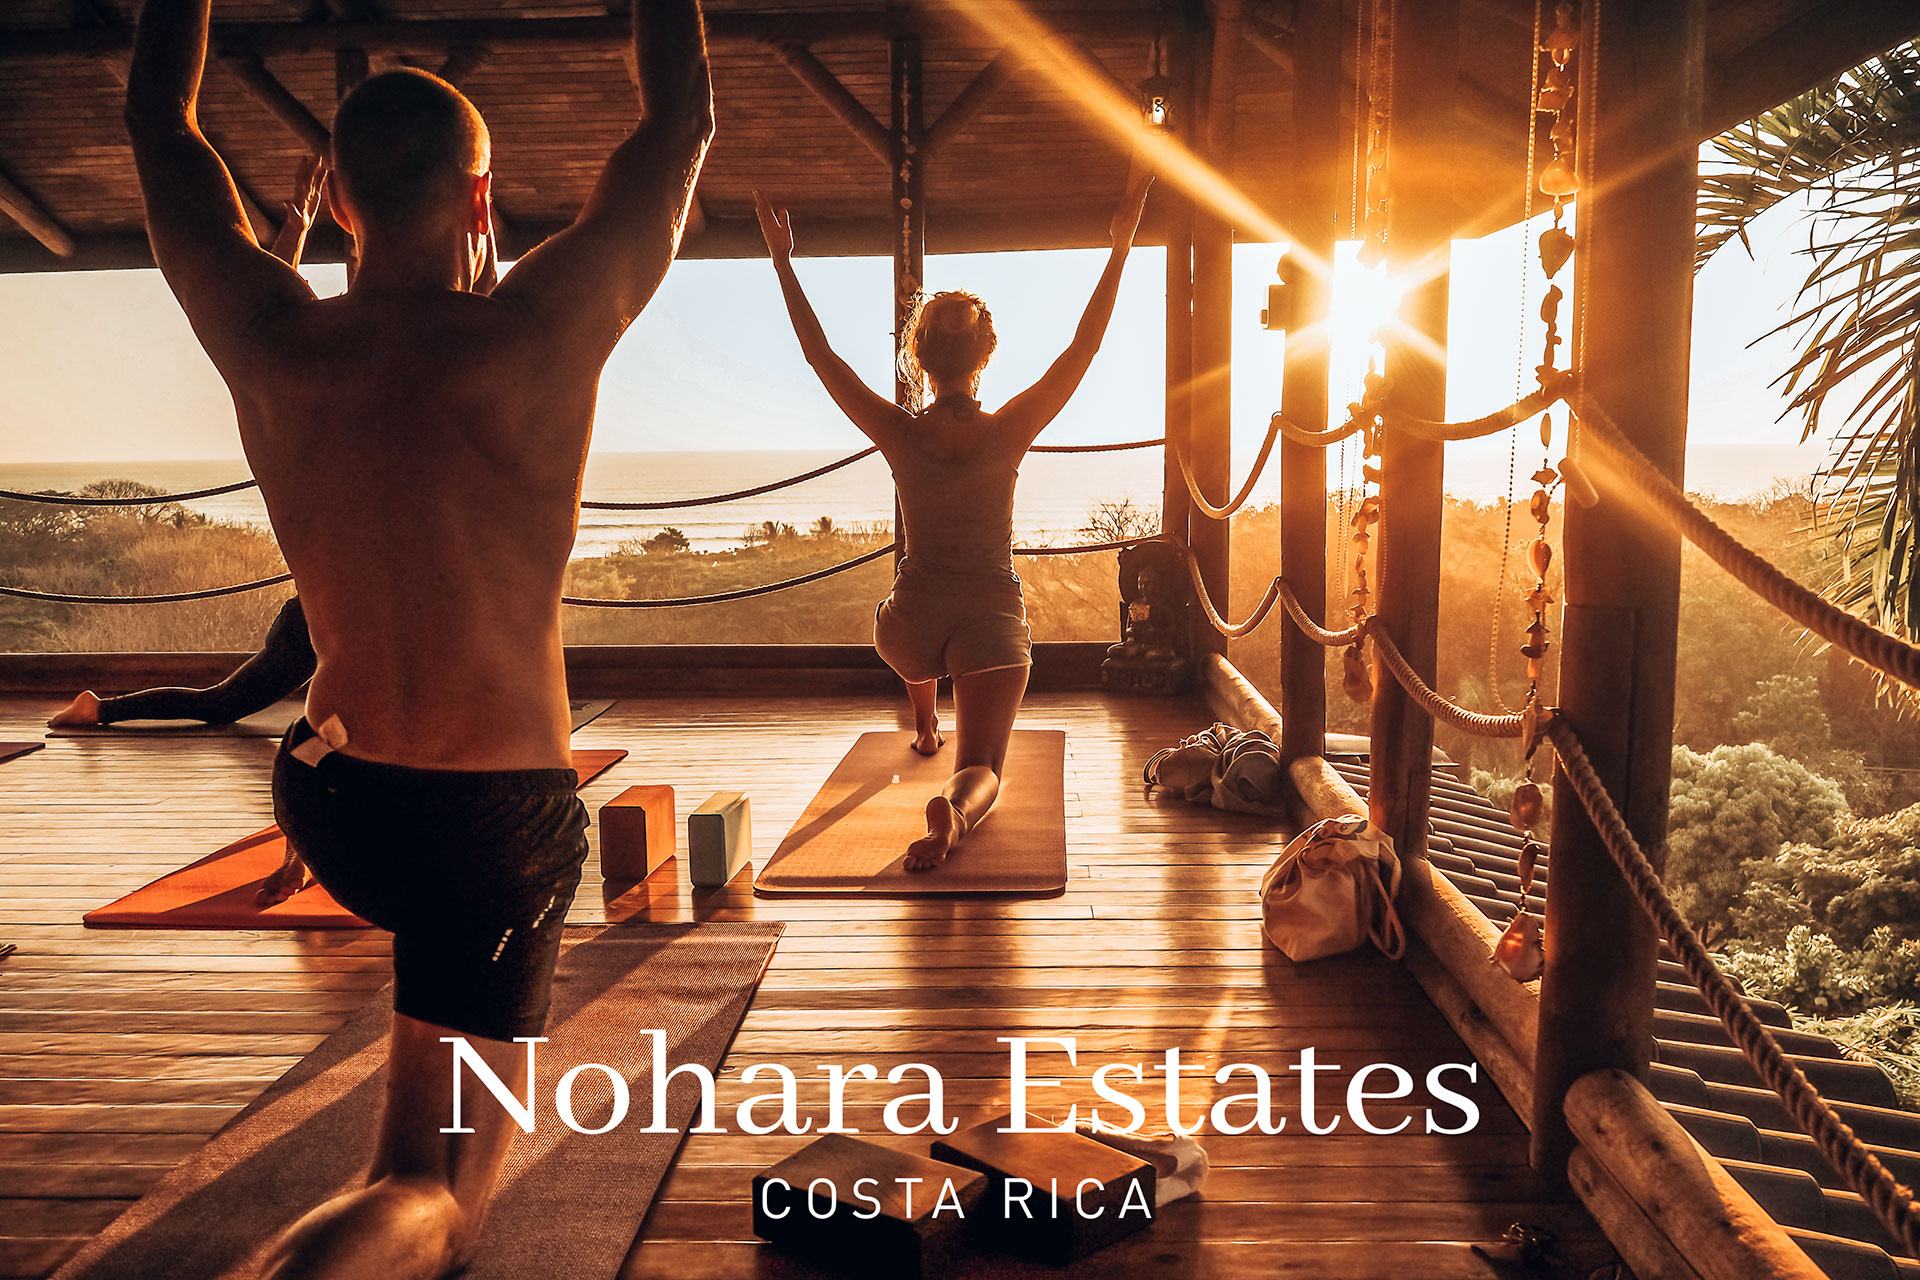 Nohara Estates Costa Rica Blue Zone 4